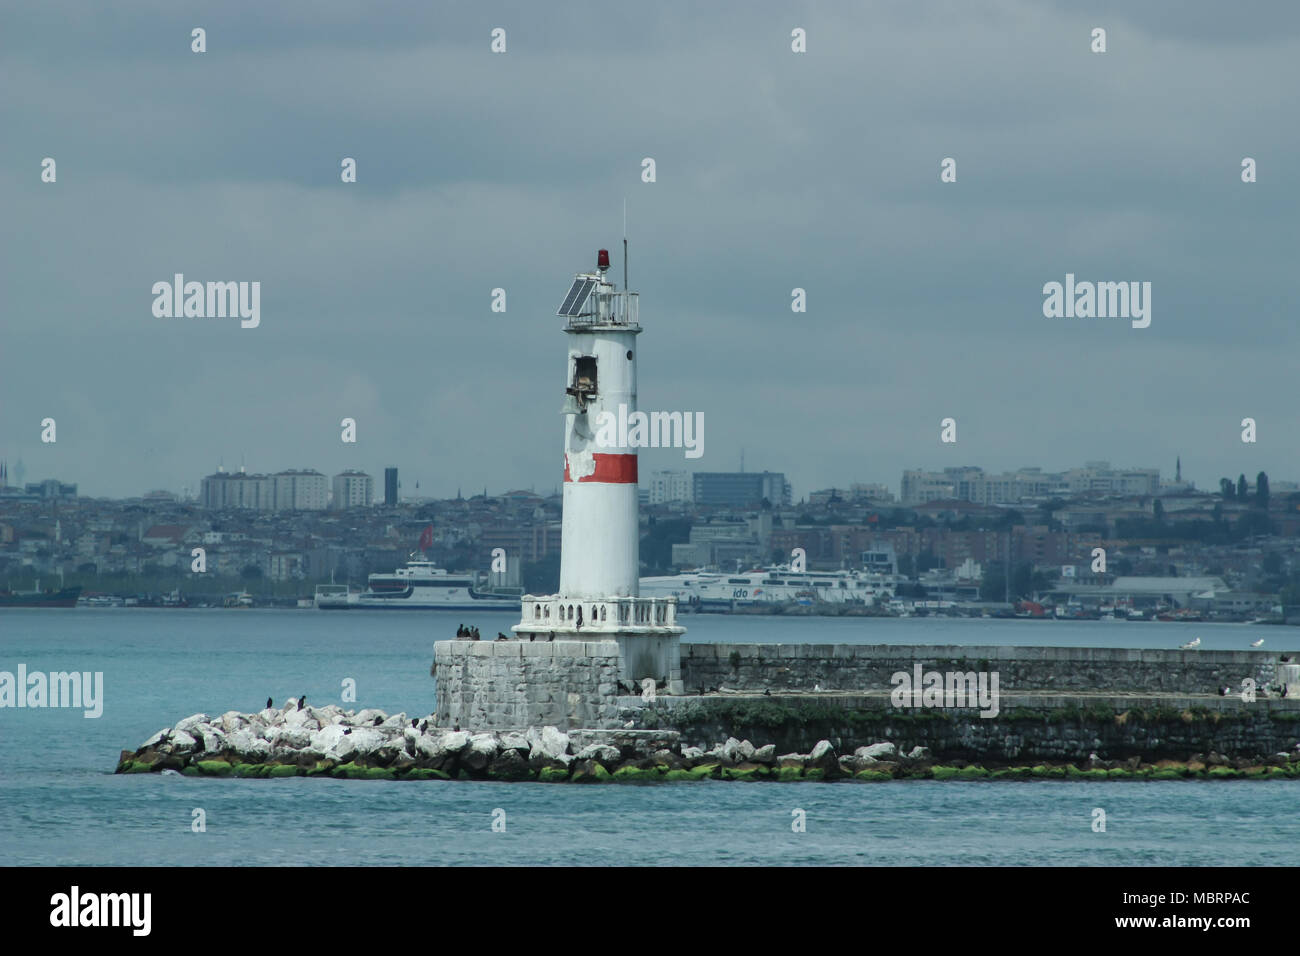 Europas Tor nach Asien o umgekehrt. Leuchtturm von einem öffentlichen Verkehrsmittel bei der Fähre, Bosporus, Istanbul in der Türkei gesehen Stockfoto